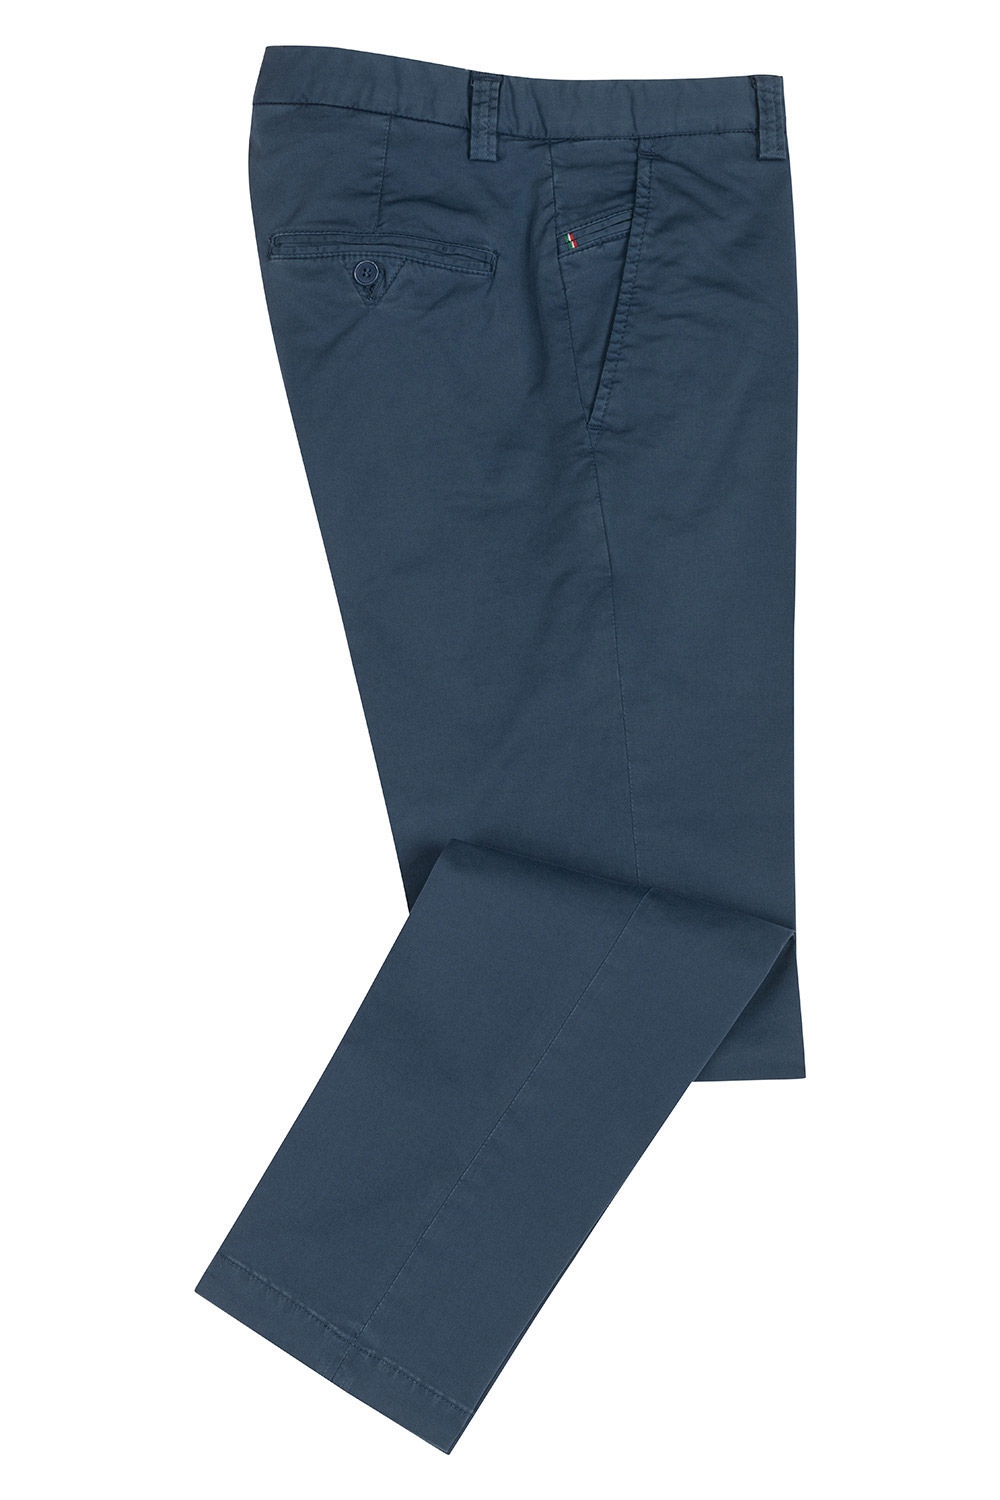 Pantaloni slim bleumarin uni 1